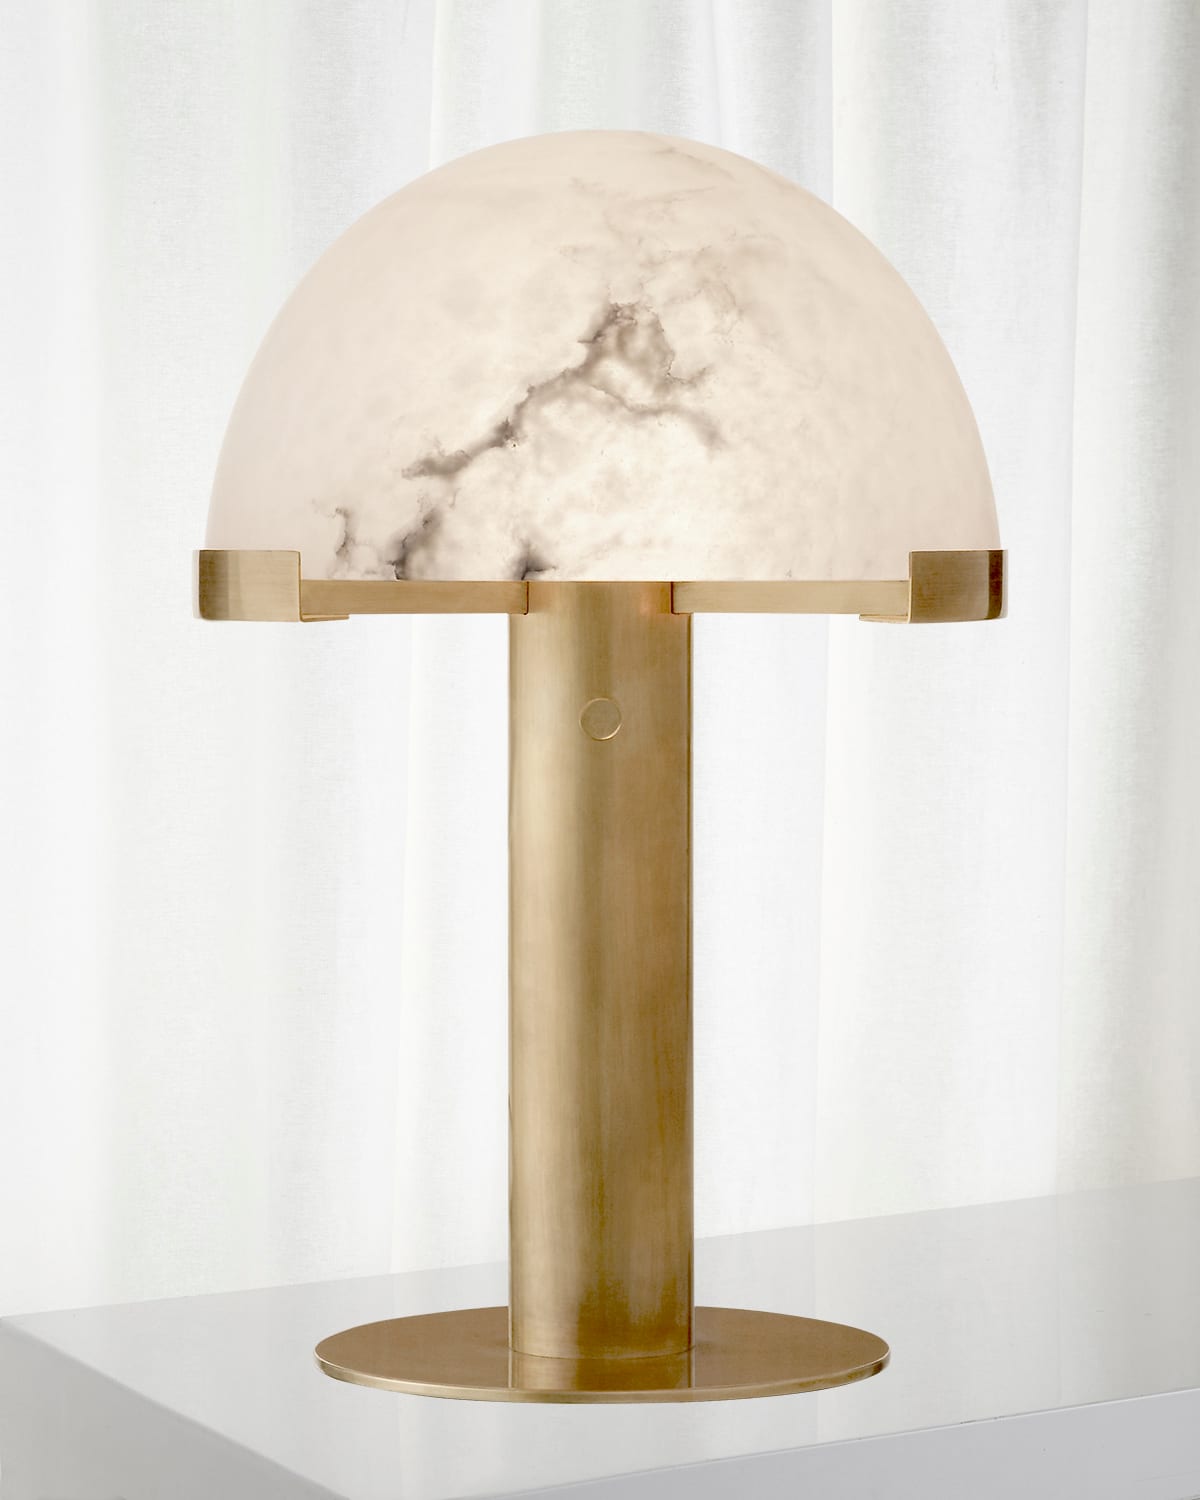 KELLY WEARSTLER MELANGE DESK LAMP BY KELLY WEARSTLER,PROD216880156